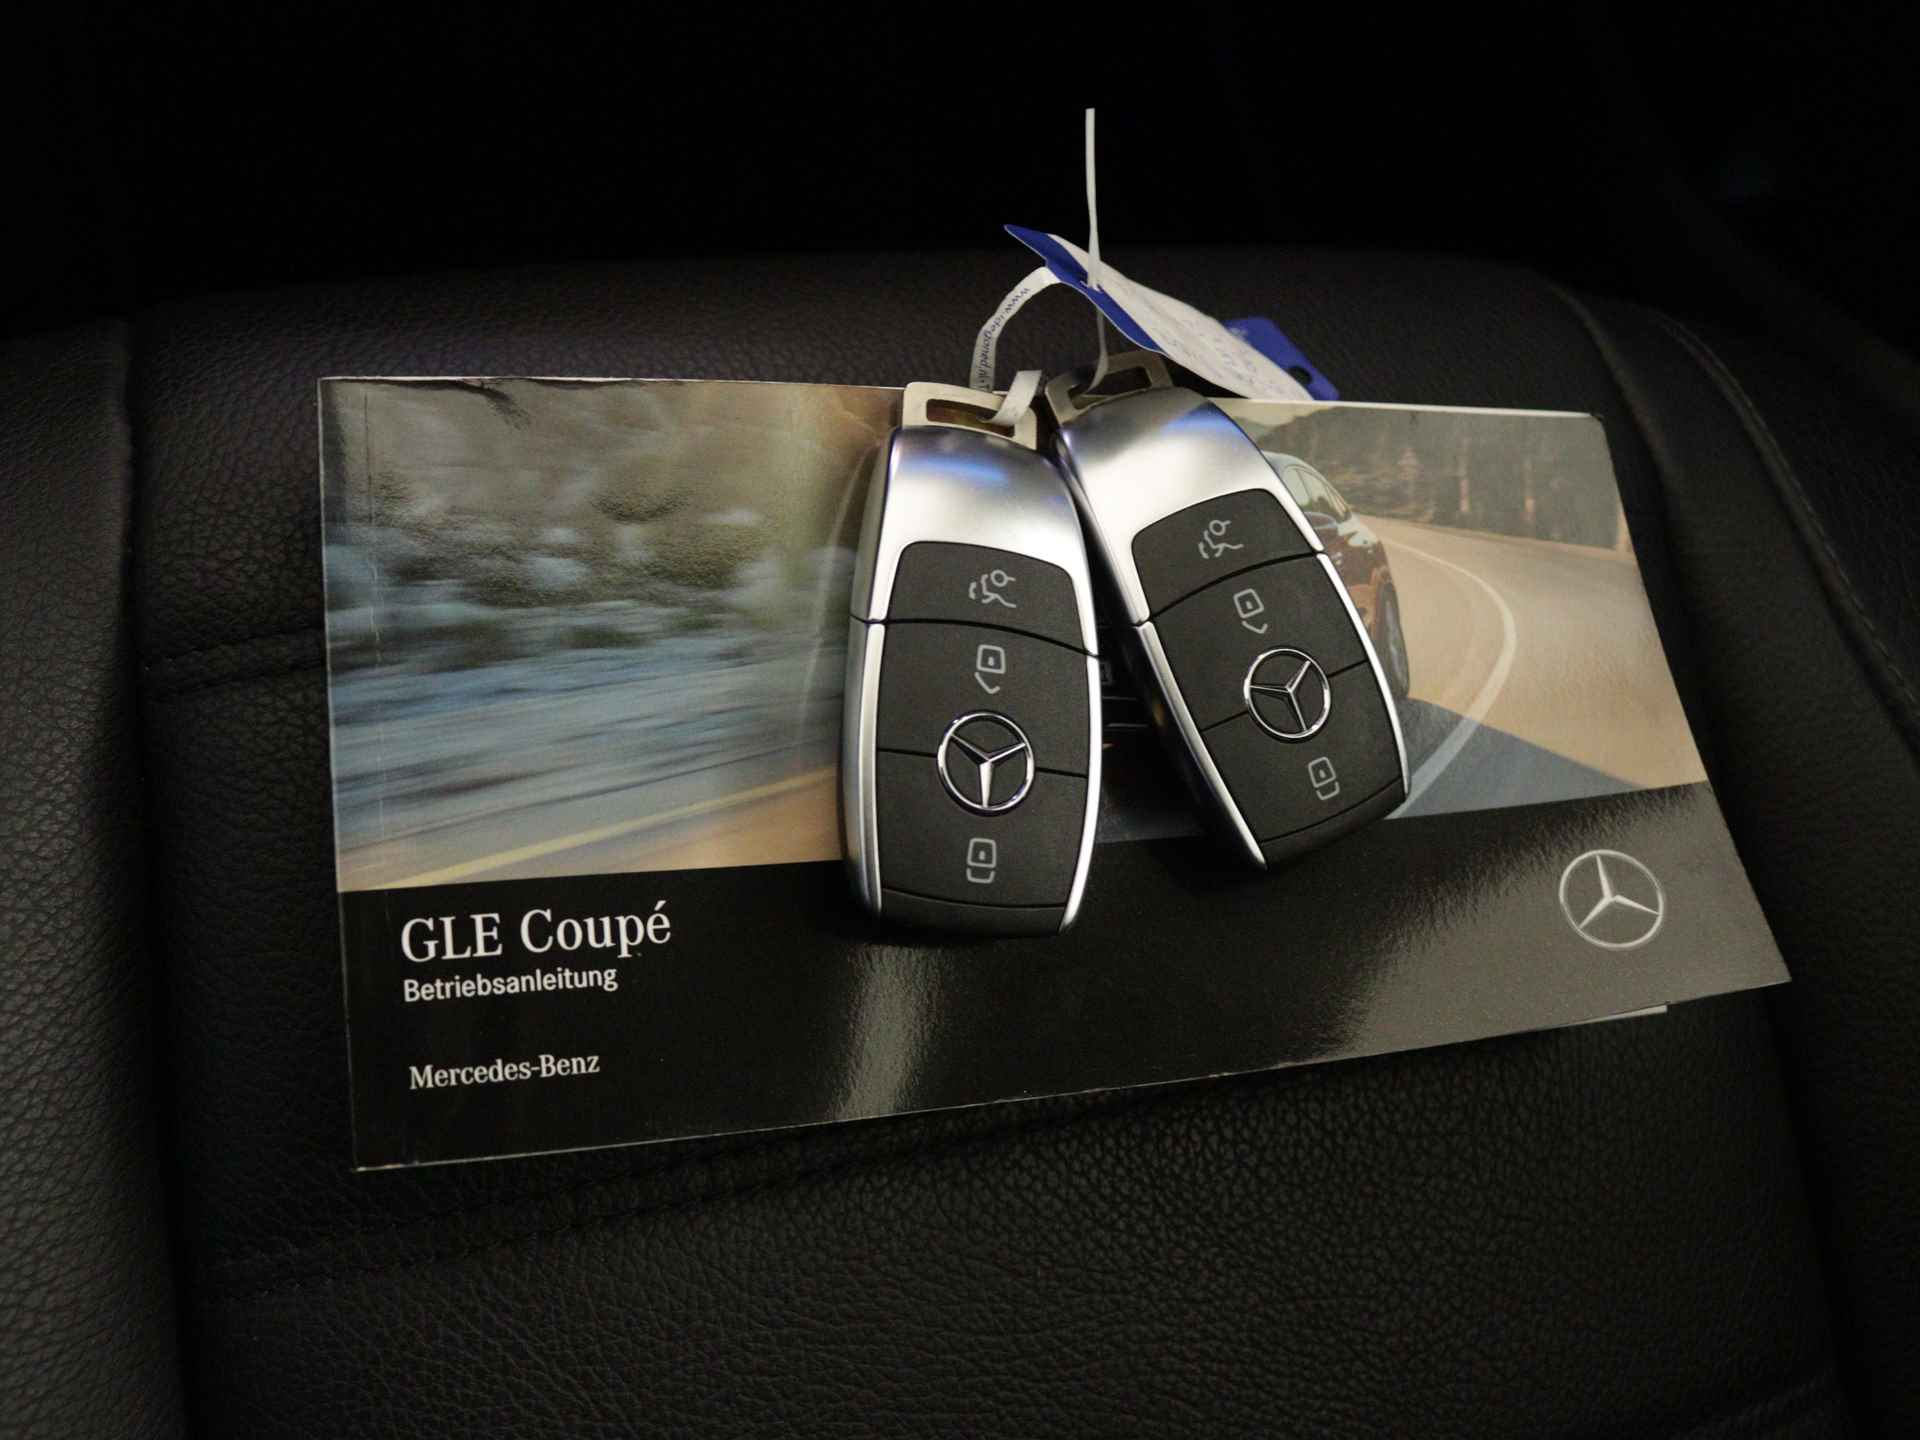 Mercedes-Benz GLE 350 e 4-MATIC AMG Nightpakket Limited 5 spaaks lichtmetalen velgen | Trekhaak | Airmatic | Treeplanken | Alarm klasse 3 |  Augmented Reality | sfeerverlichting | DAB | Parking support | inclusief 24 maanden MB Certified garantie voor europa - 14/45